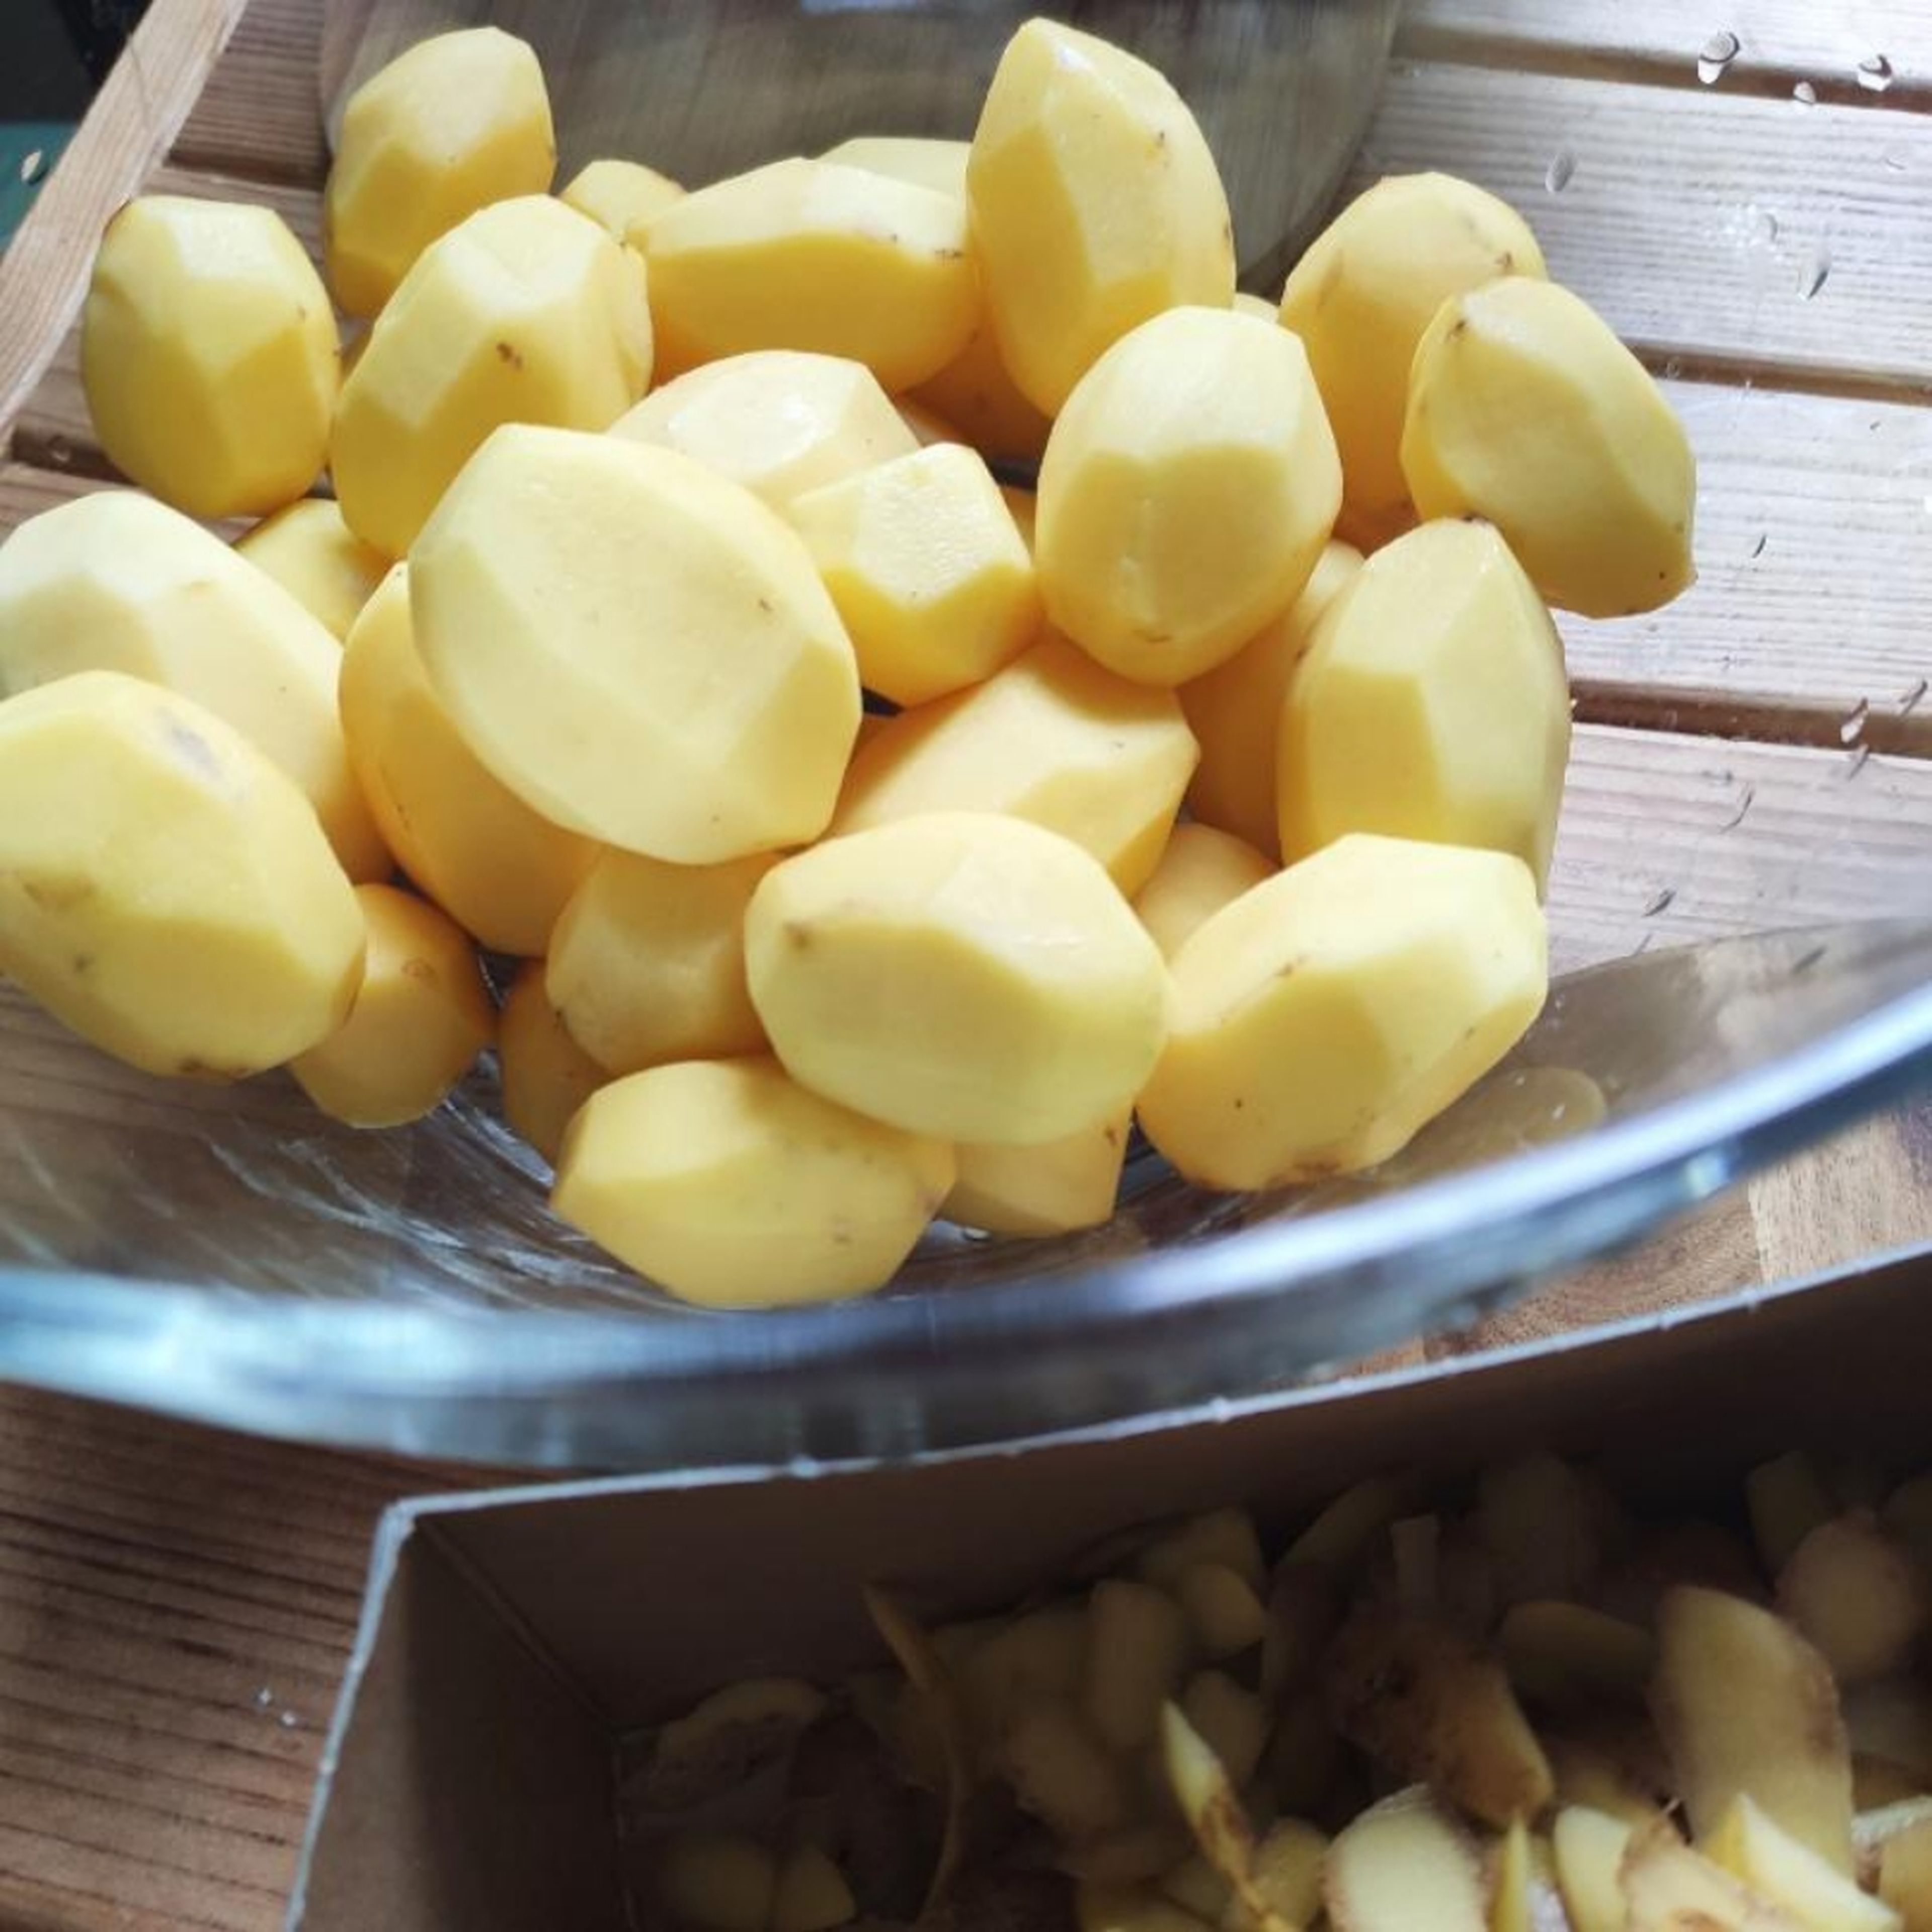 Kartoffeln schälen. Am besten eine etwas größere Kartoffelsorte nehmen - das macht weniger Arbeit.